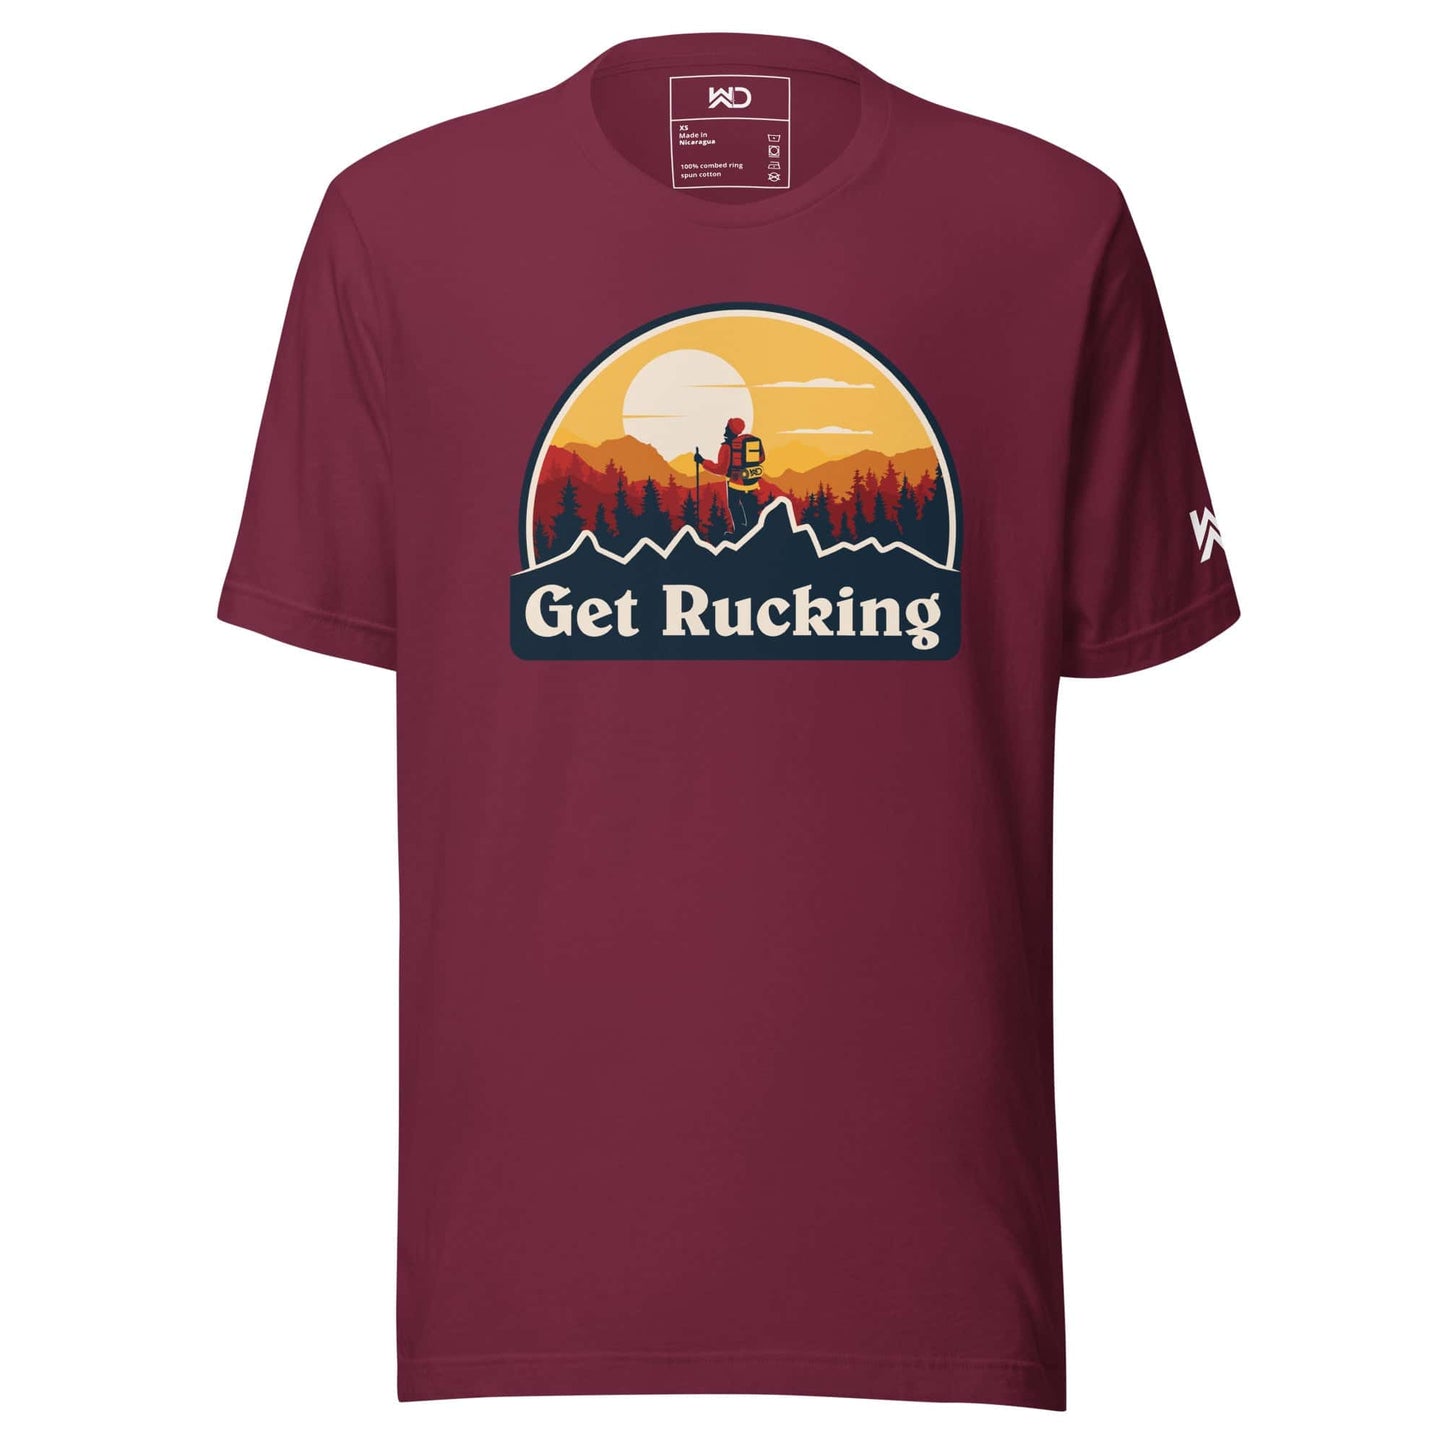 Get Rucking - Unisex t-shirt